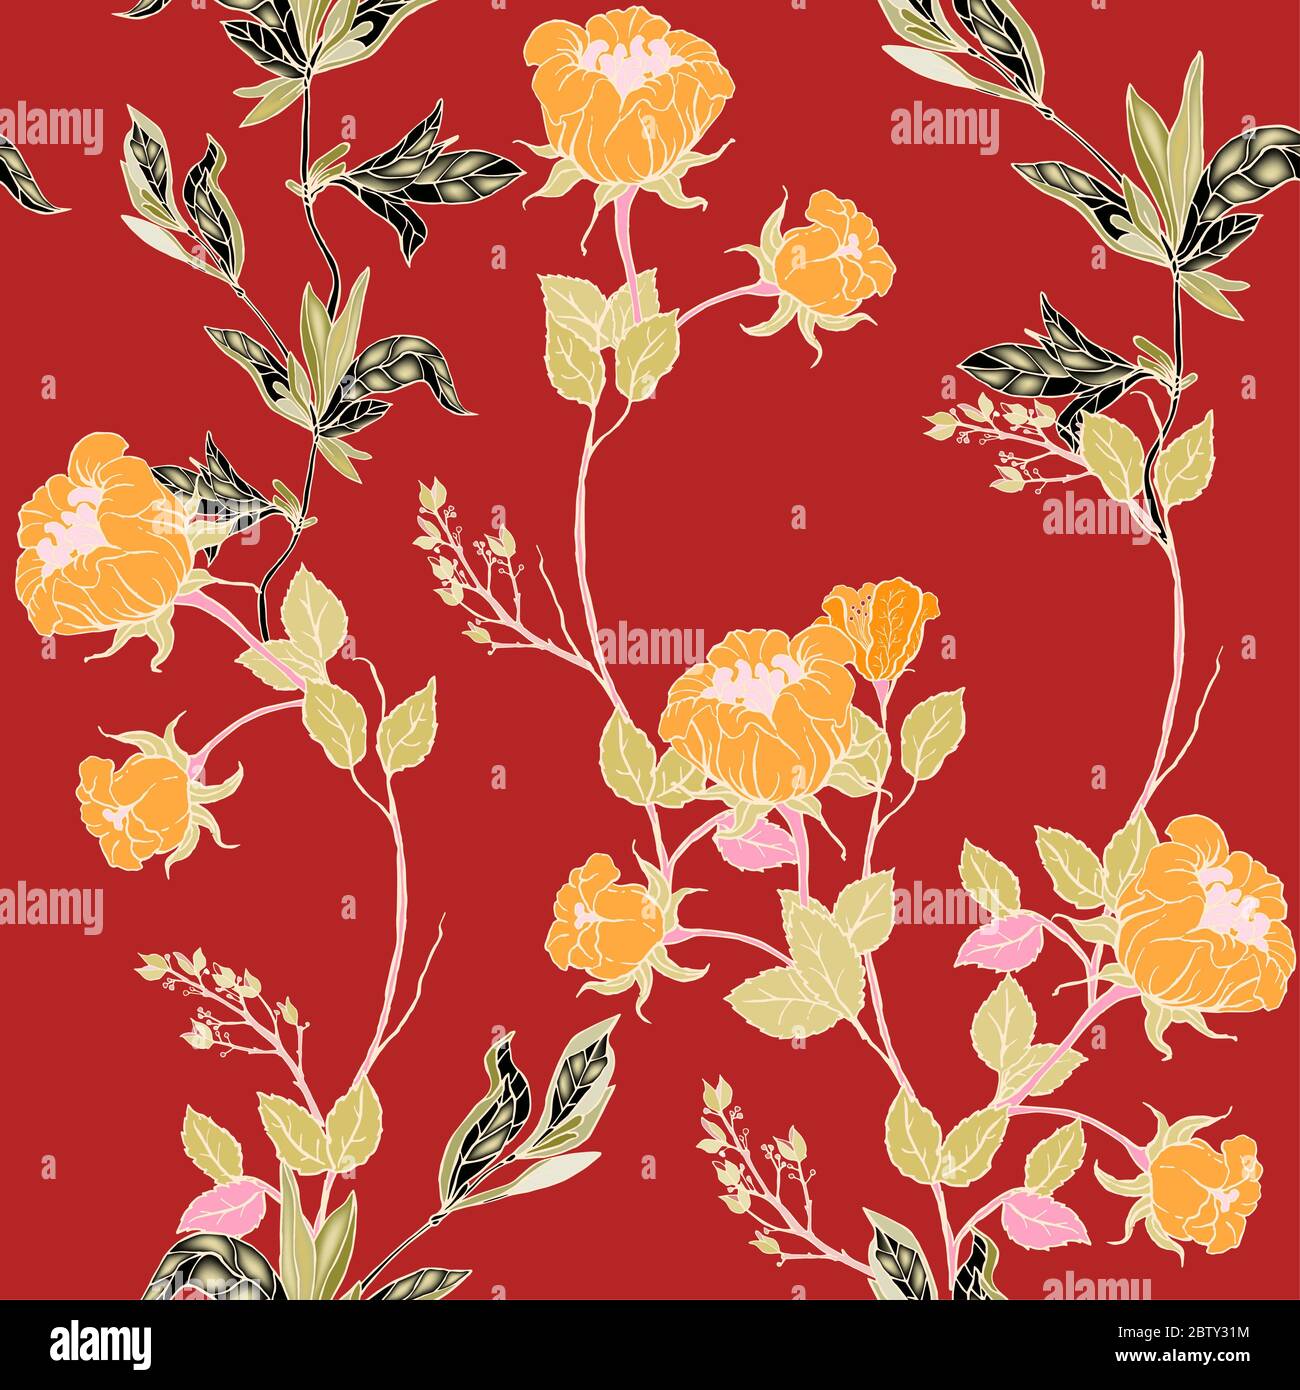 Delicati ramoscelli di rose mandarino selvatiche con infiorescenze, foglie e petali su sfondo rosso. Motivo floreale senza cuciture. Illustrazione vettoriale disegnata a mano Foto Stock